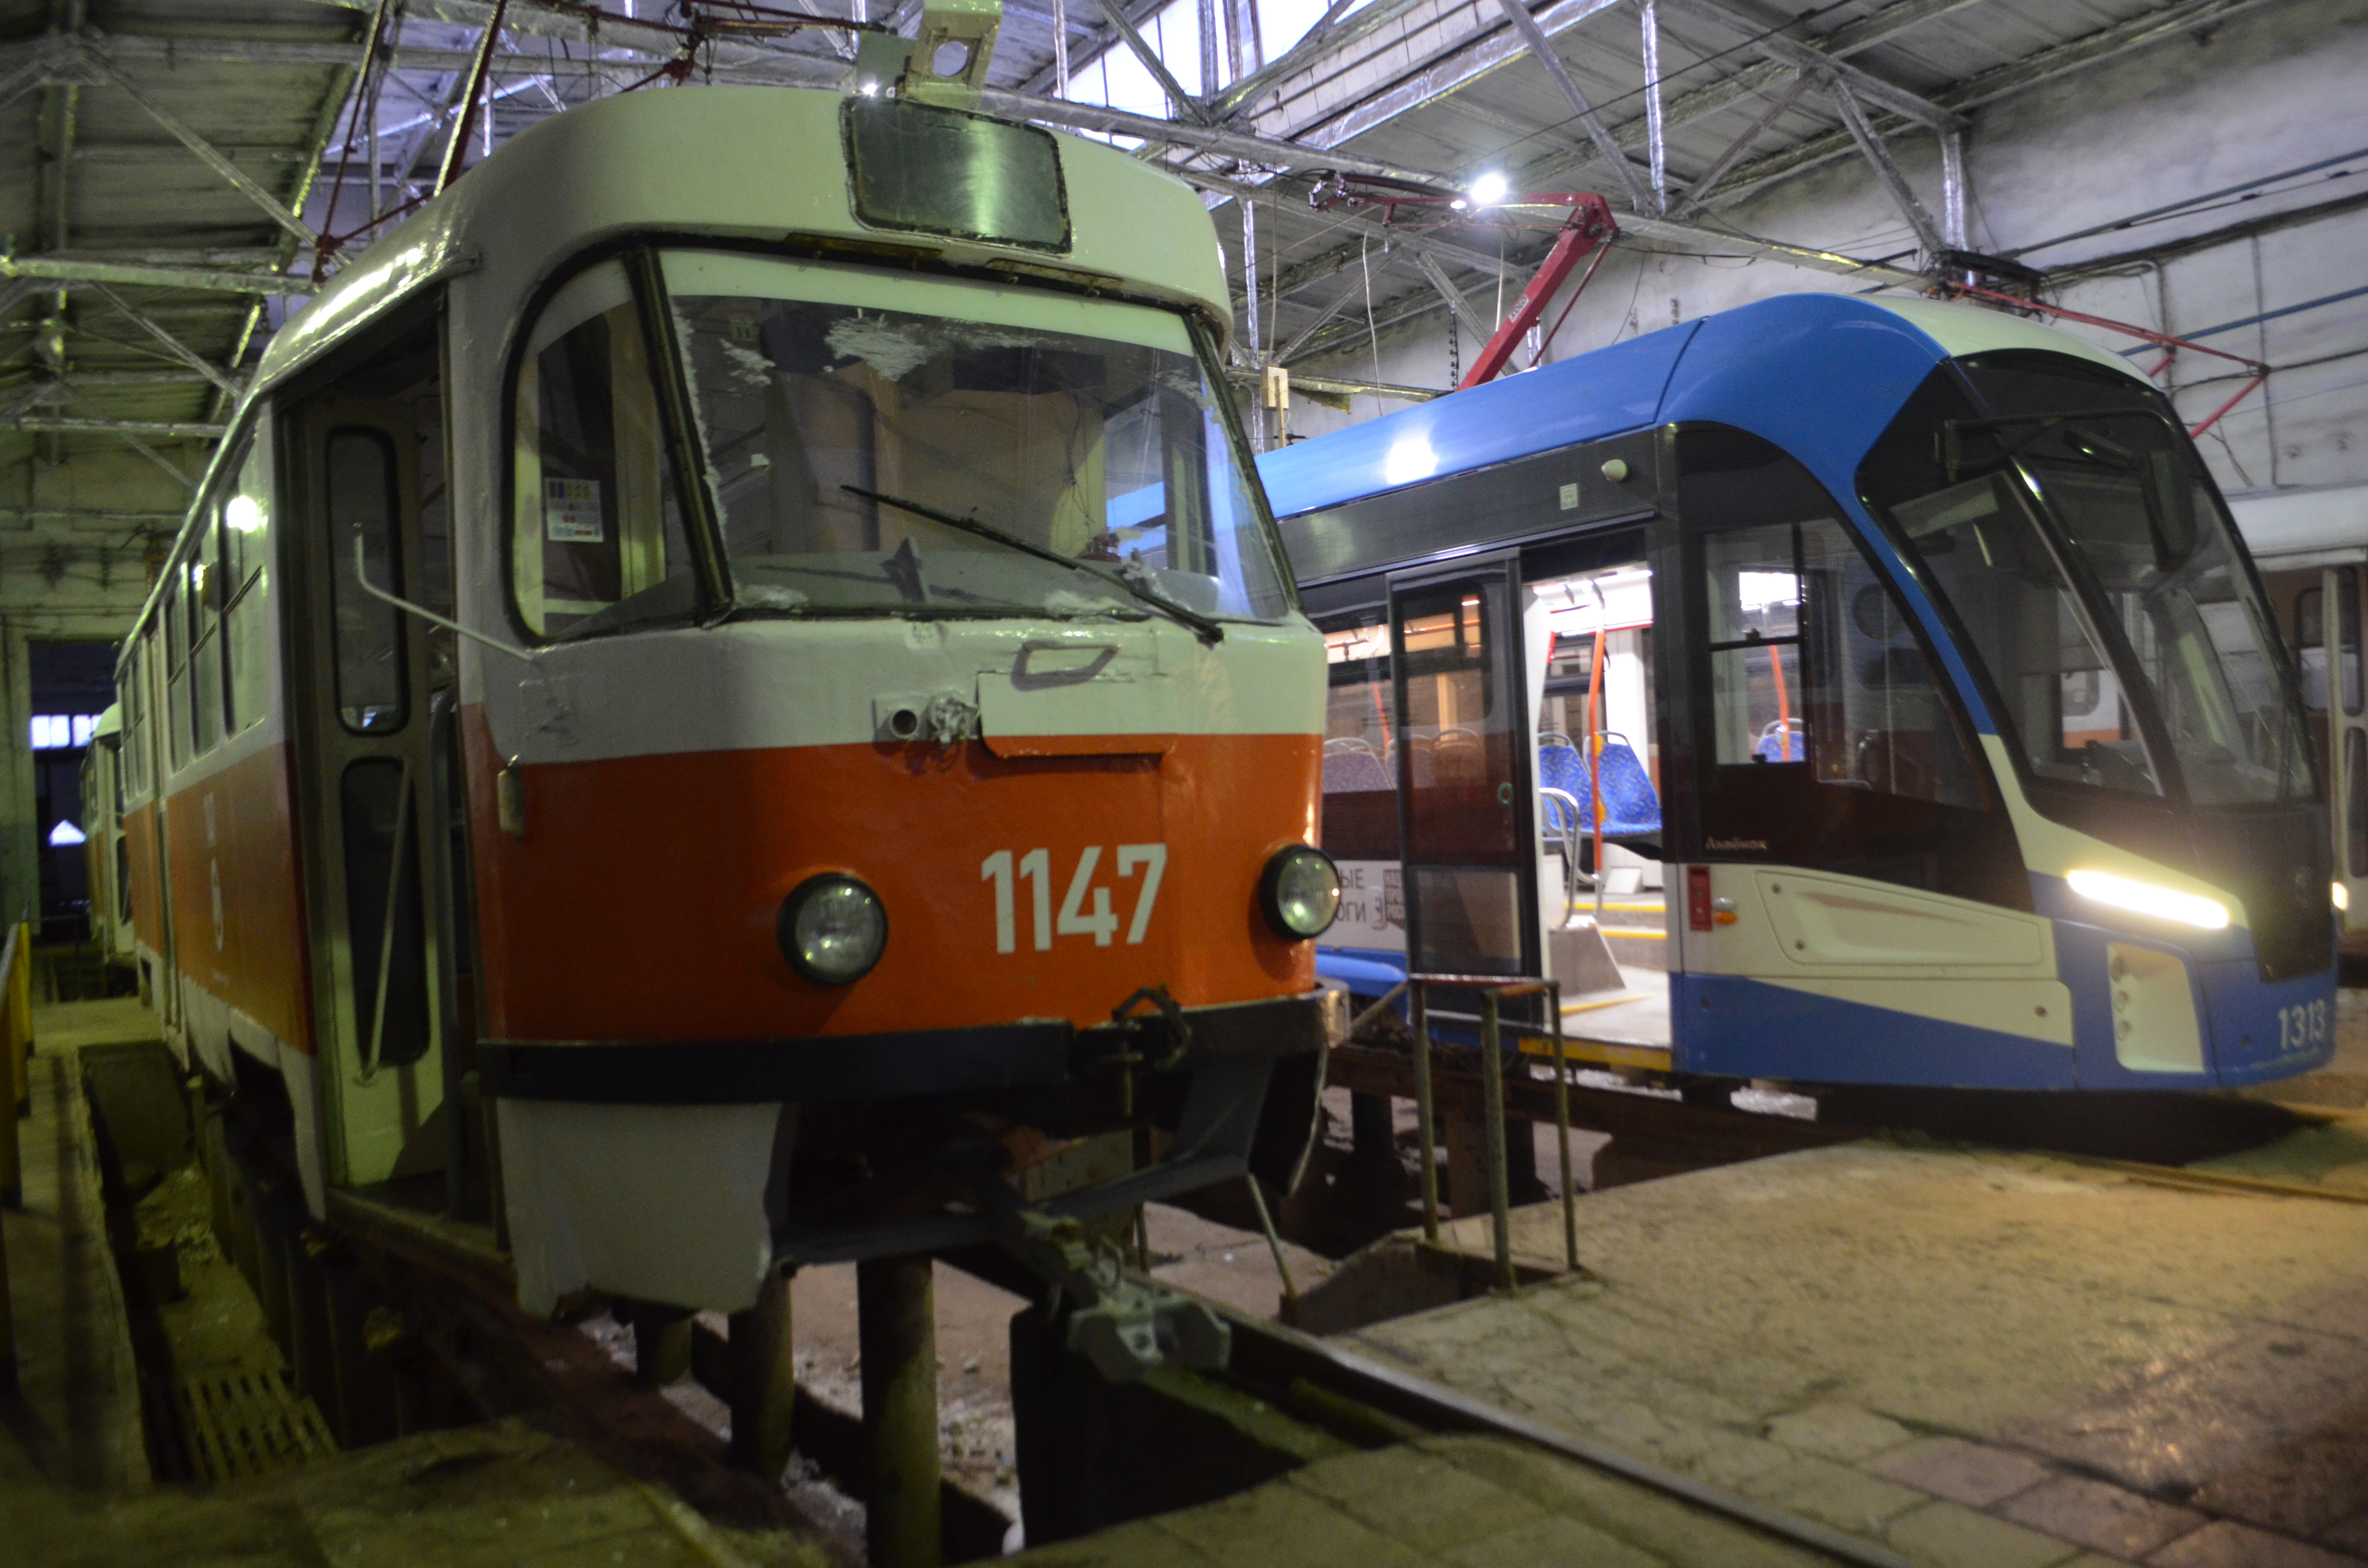 Ульяновск ремонтирует электротранспорт и готовится к суду с производителем трамваев «Львёнок».